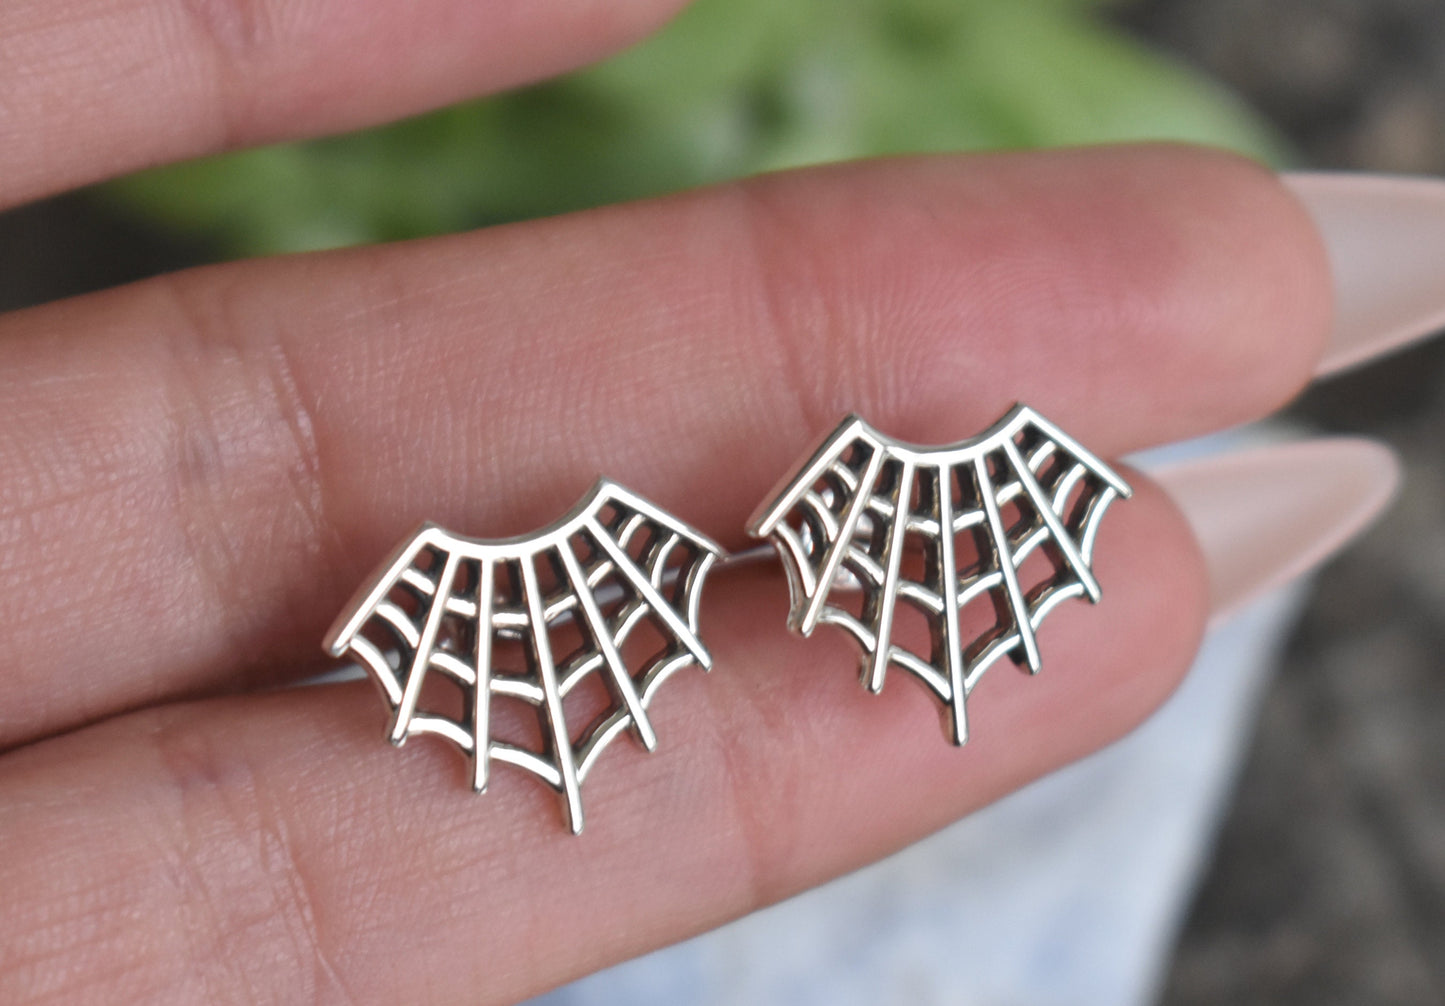 Web Earrings- Web Studs, Spider Jewelry, Spider Earrings, Halloween Earrings